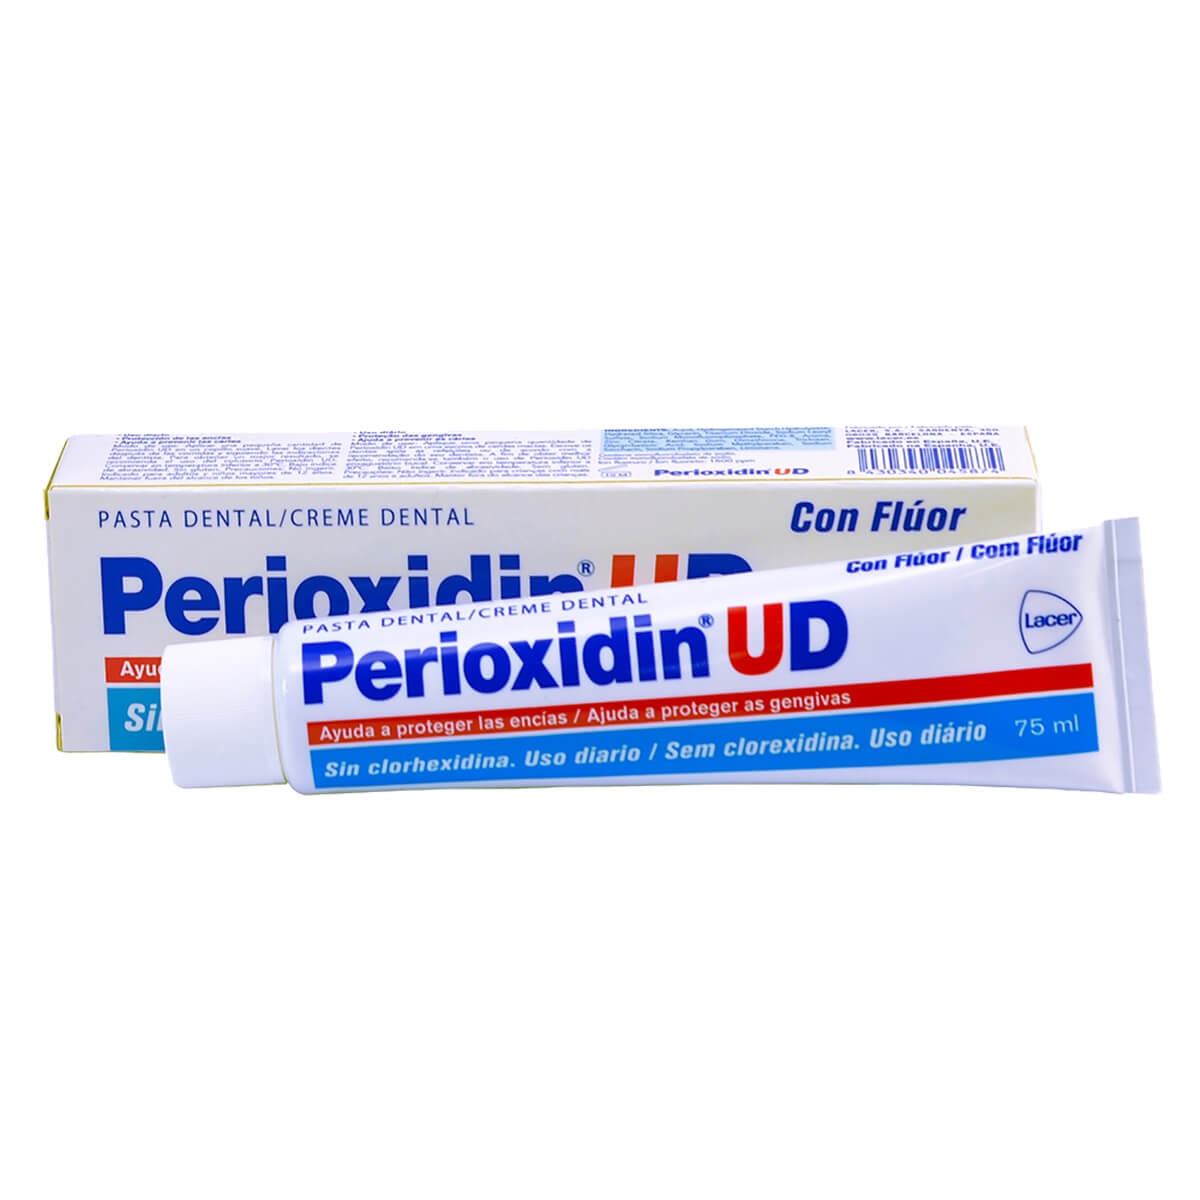 Creme Dental Perioxidin UD 75ml